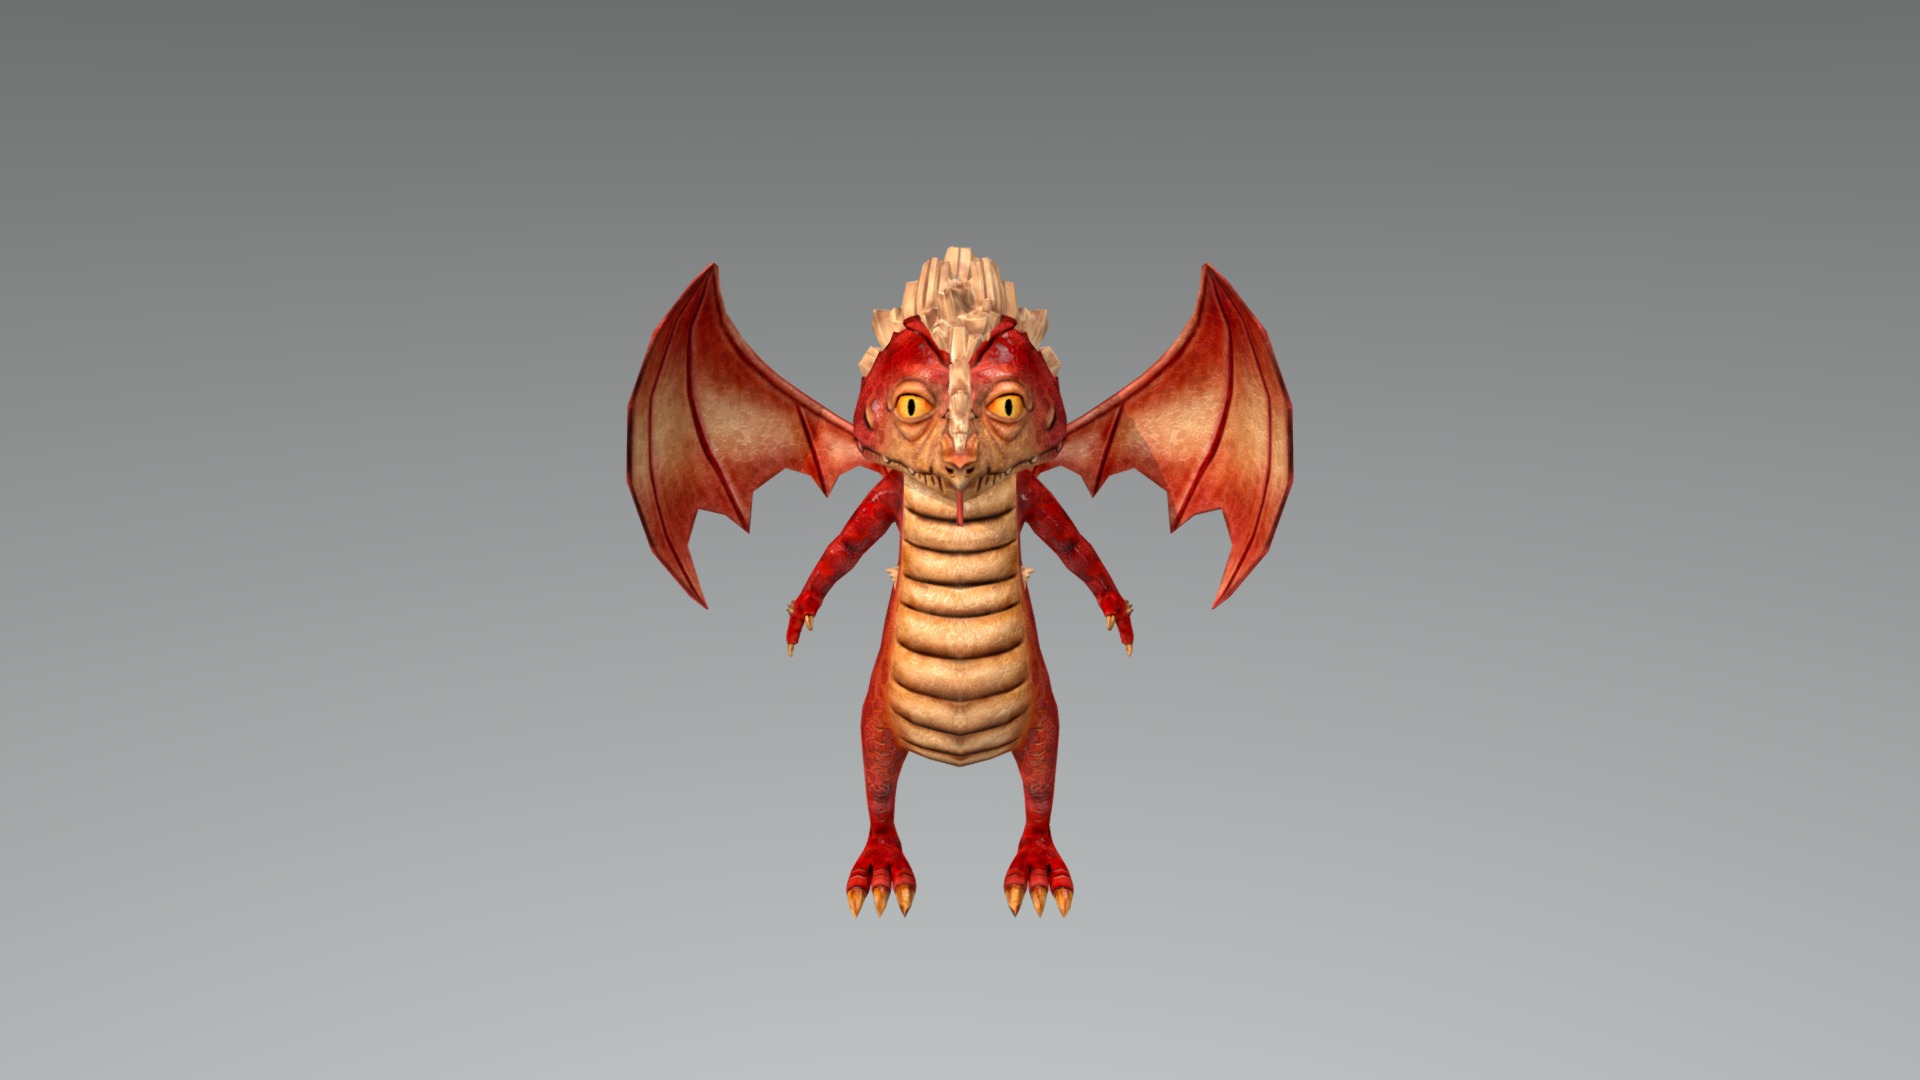 3D model Emrald Dragon - This is a 3D model of the Emrald Dragon. The 3D model is about a red and white cat.